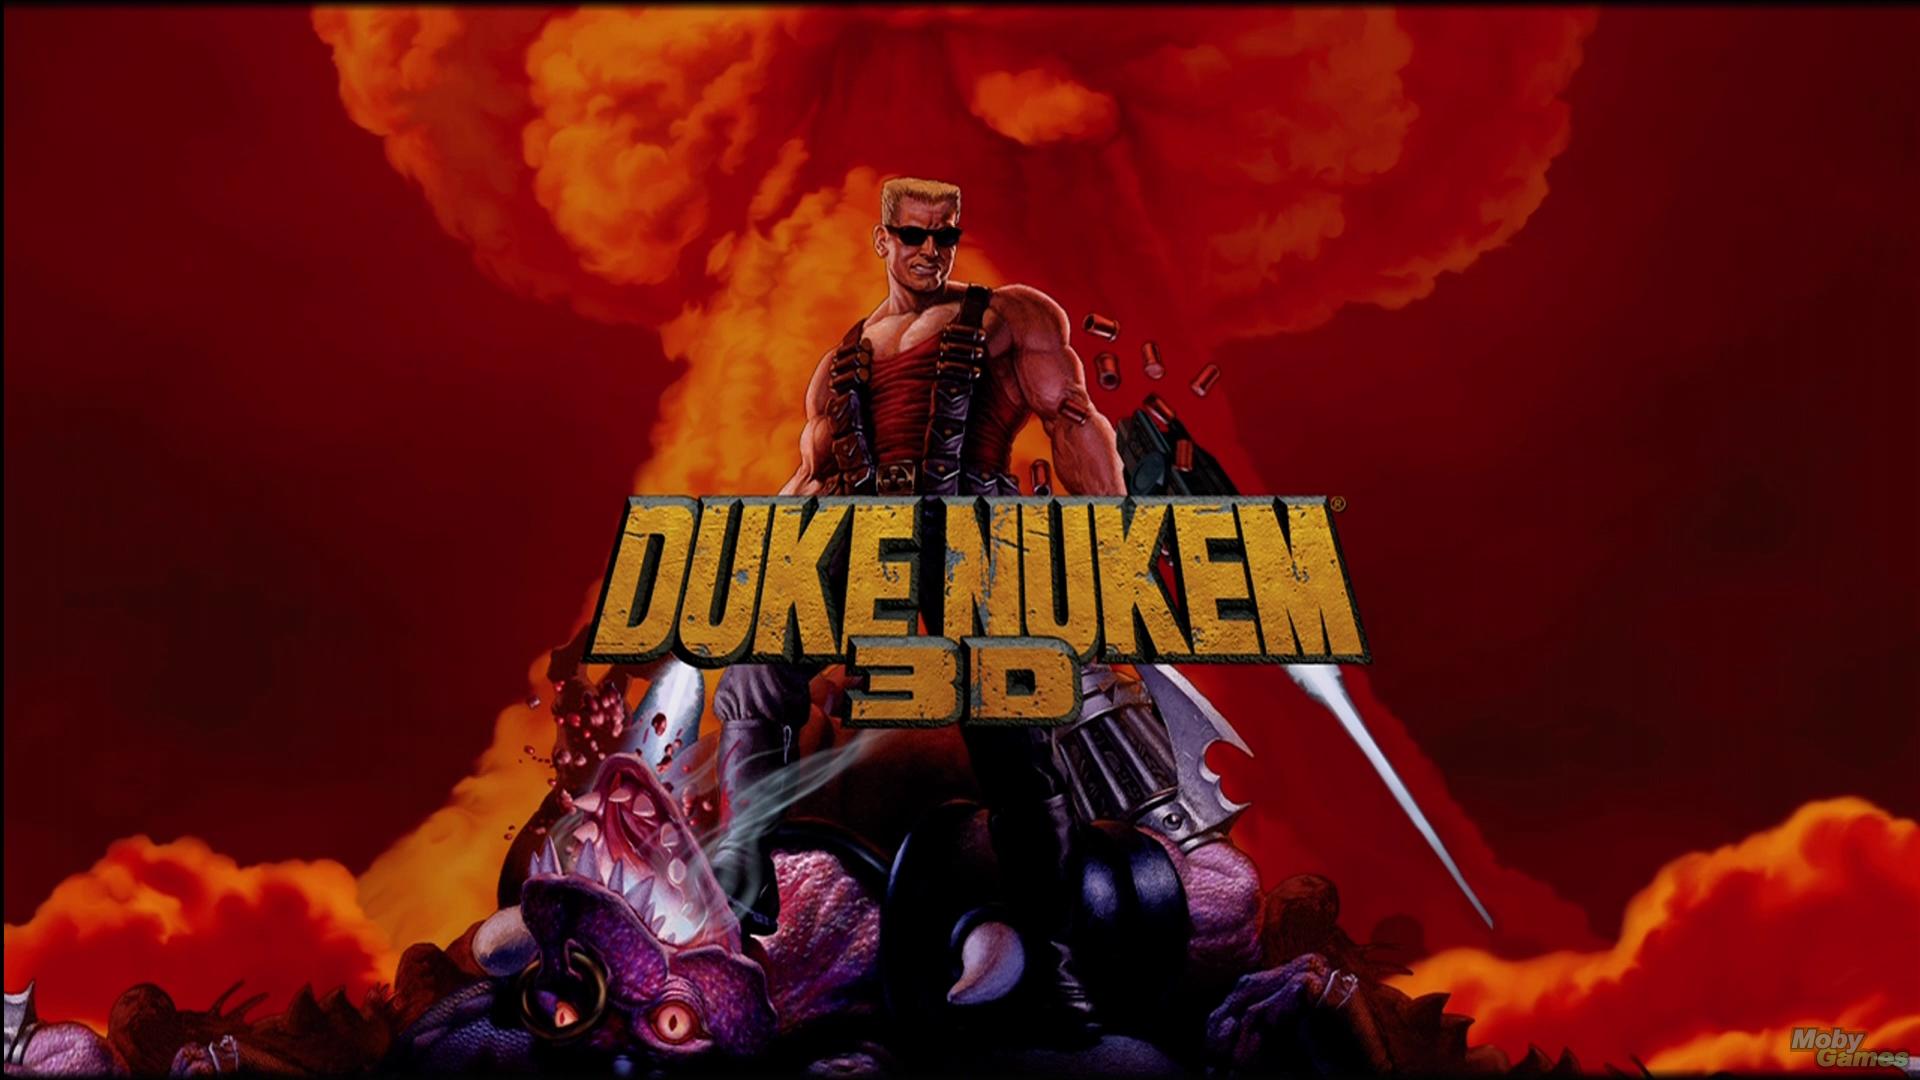 Duke Nukem 3D Backgrounds on Wallpapers Vista